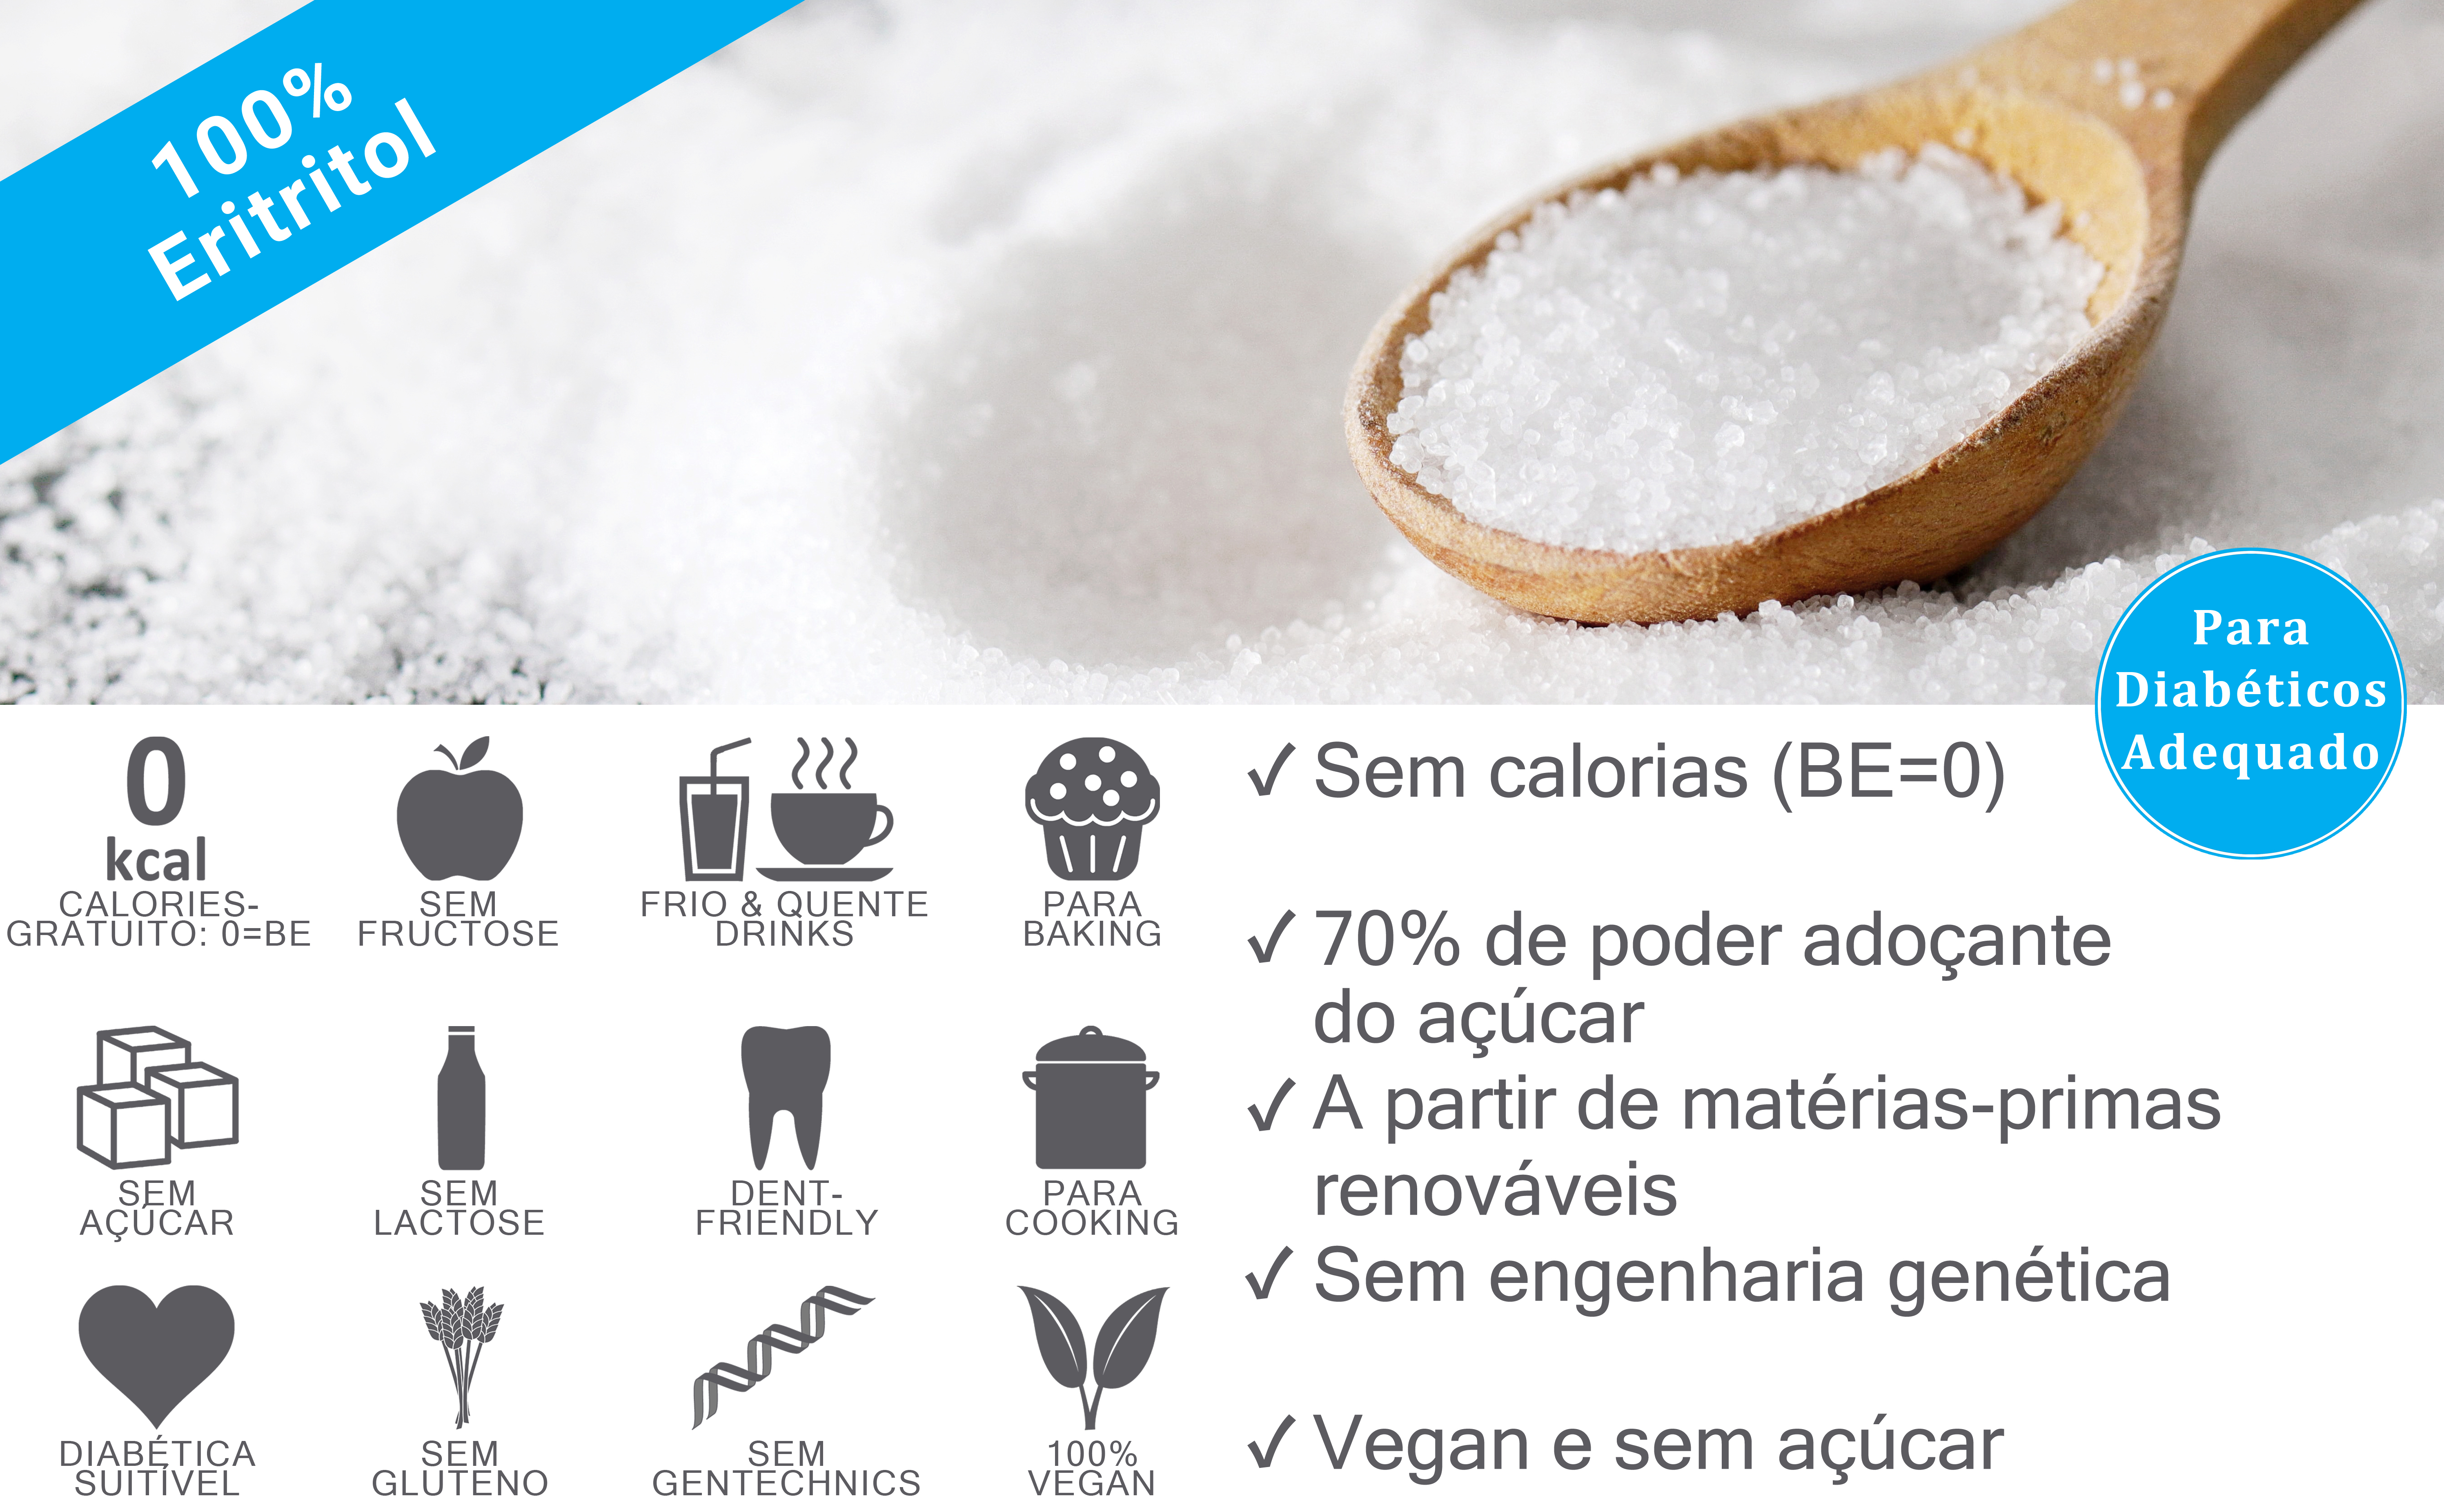 O Eritritol pertence aos álcoois de açúcar e é utilizado como substituto do açúcar. Tem cerca de 60-70 por cento do poder adoçante do açúcar.